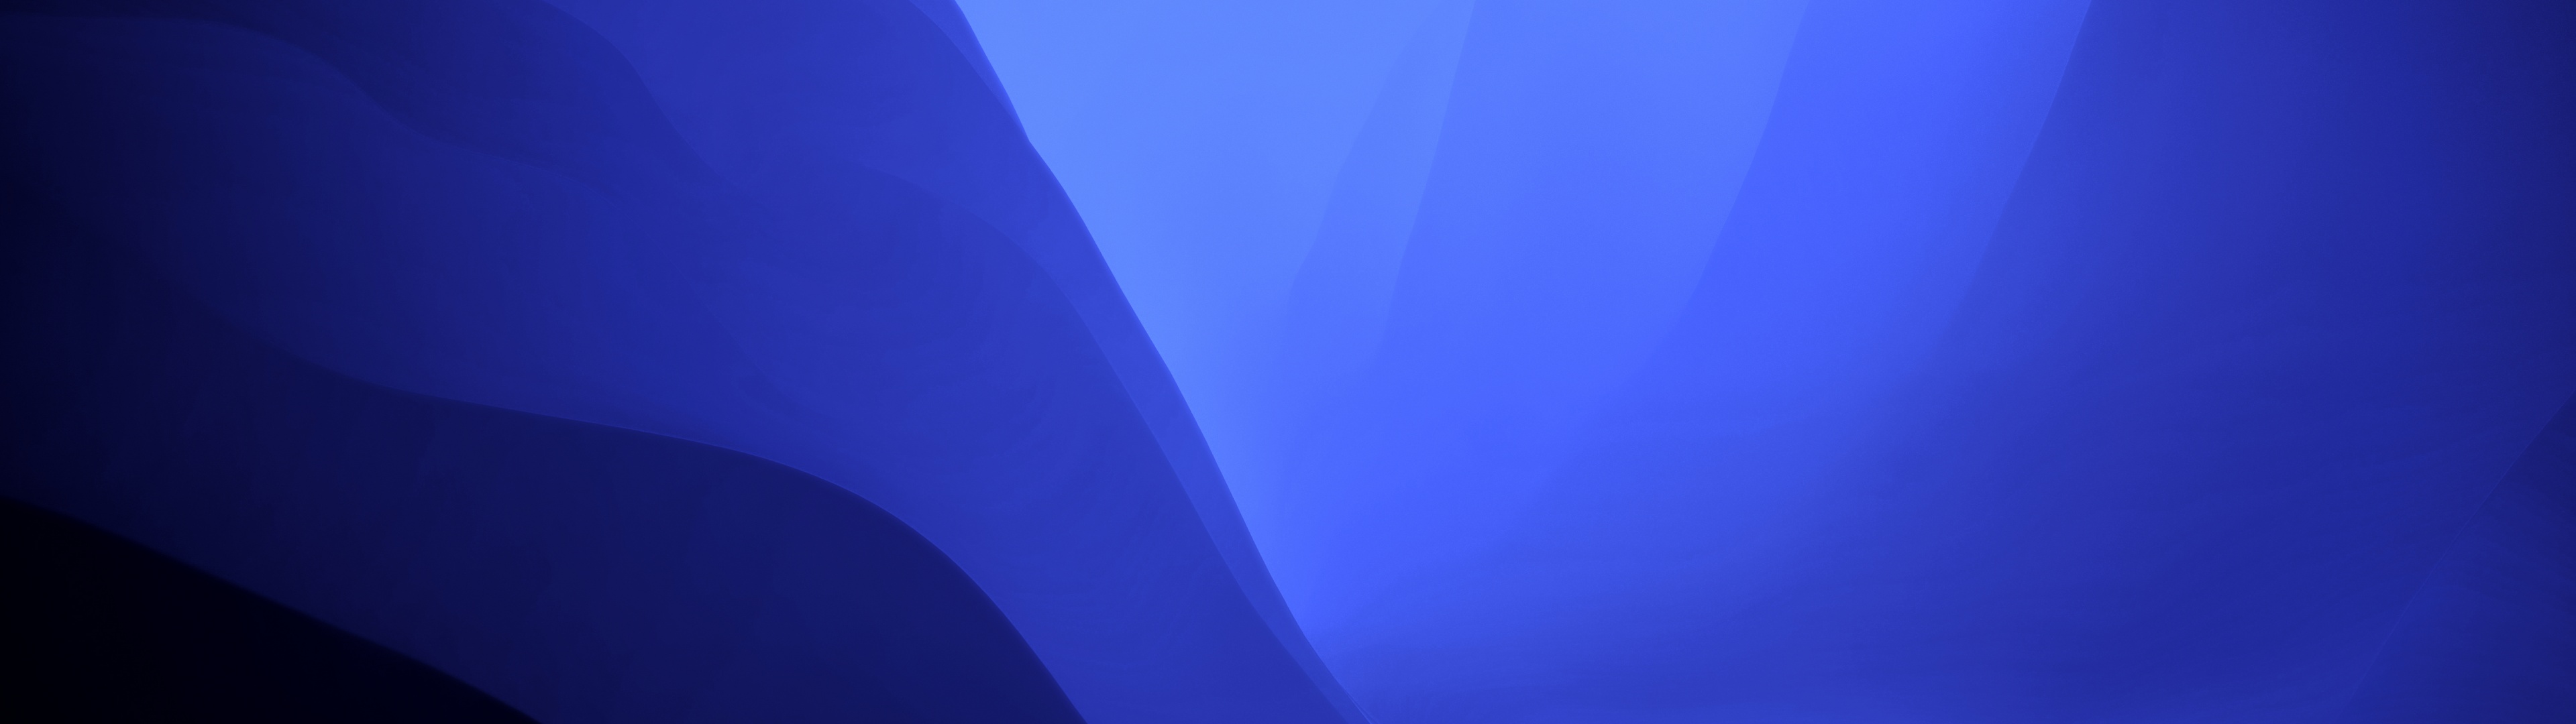 Chế độ tối của macOS cùng với những sắc màu Gradient xanh sẽ mang đến cho bạn một phong cách độc đáo và tinh tế trong việc sử dụng máy tính. Hãy thưởng thức vẻ đẹp của những sắc màu này trong hình nền liên quan đến từ khóa \